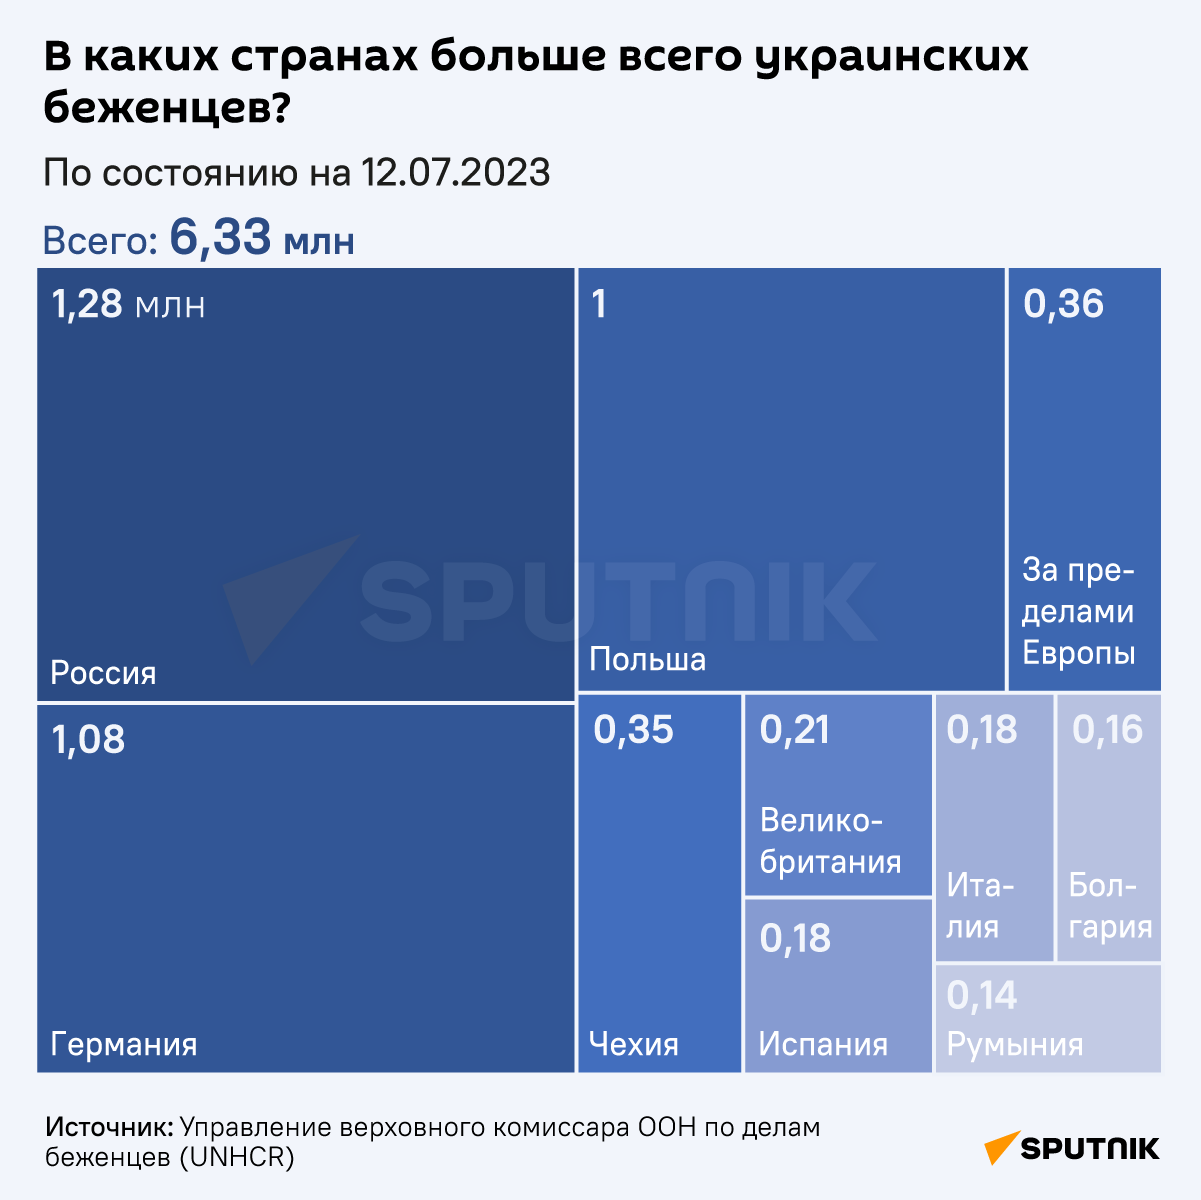 Инфографика: В Каких странах больше всего украинских беженцев? - Sputnik Азербайджан